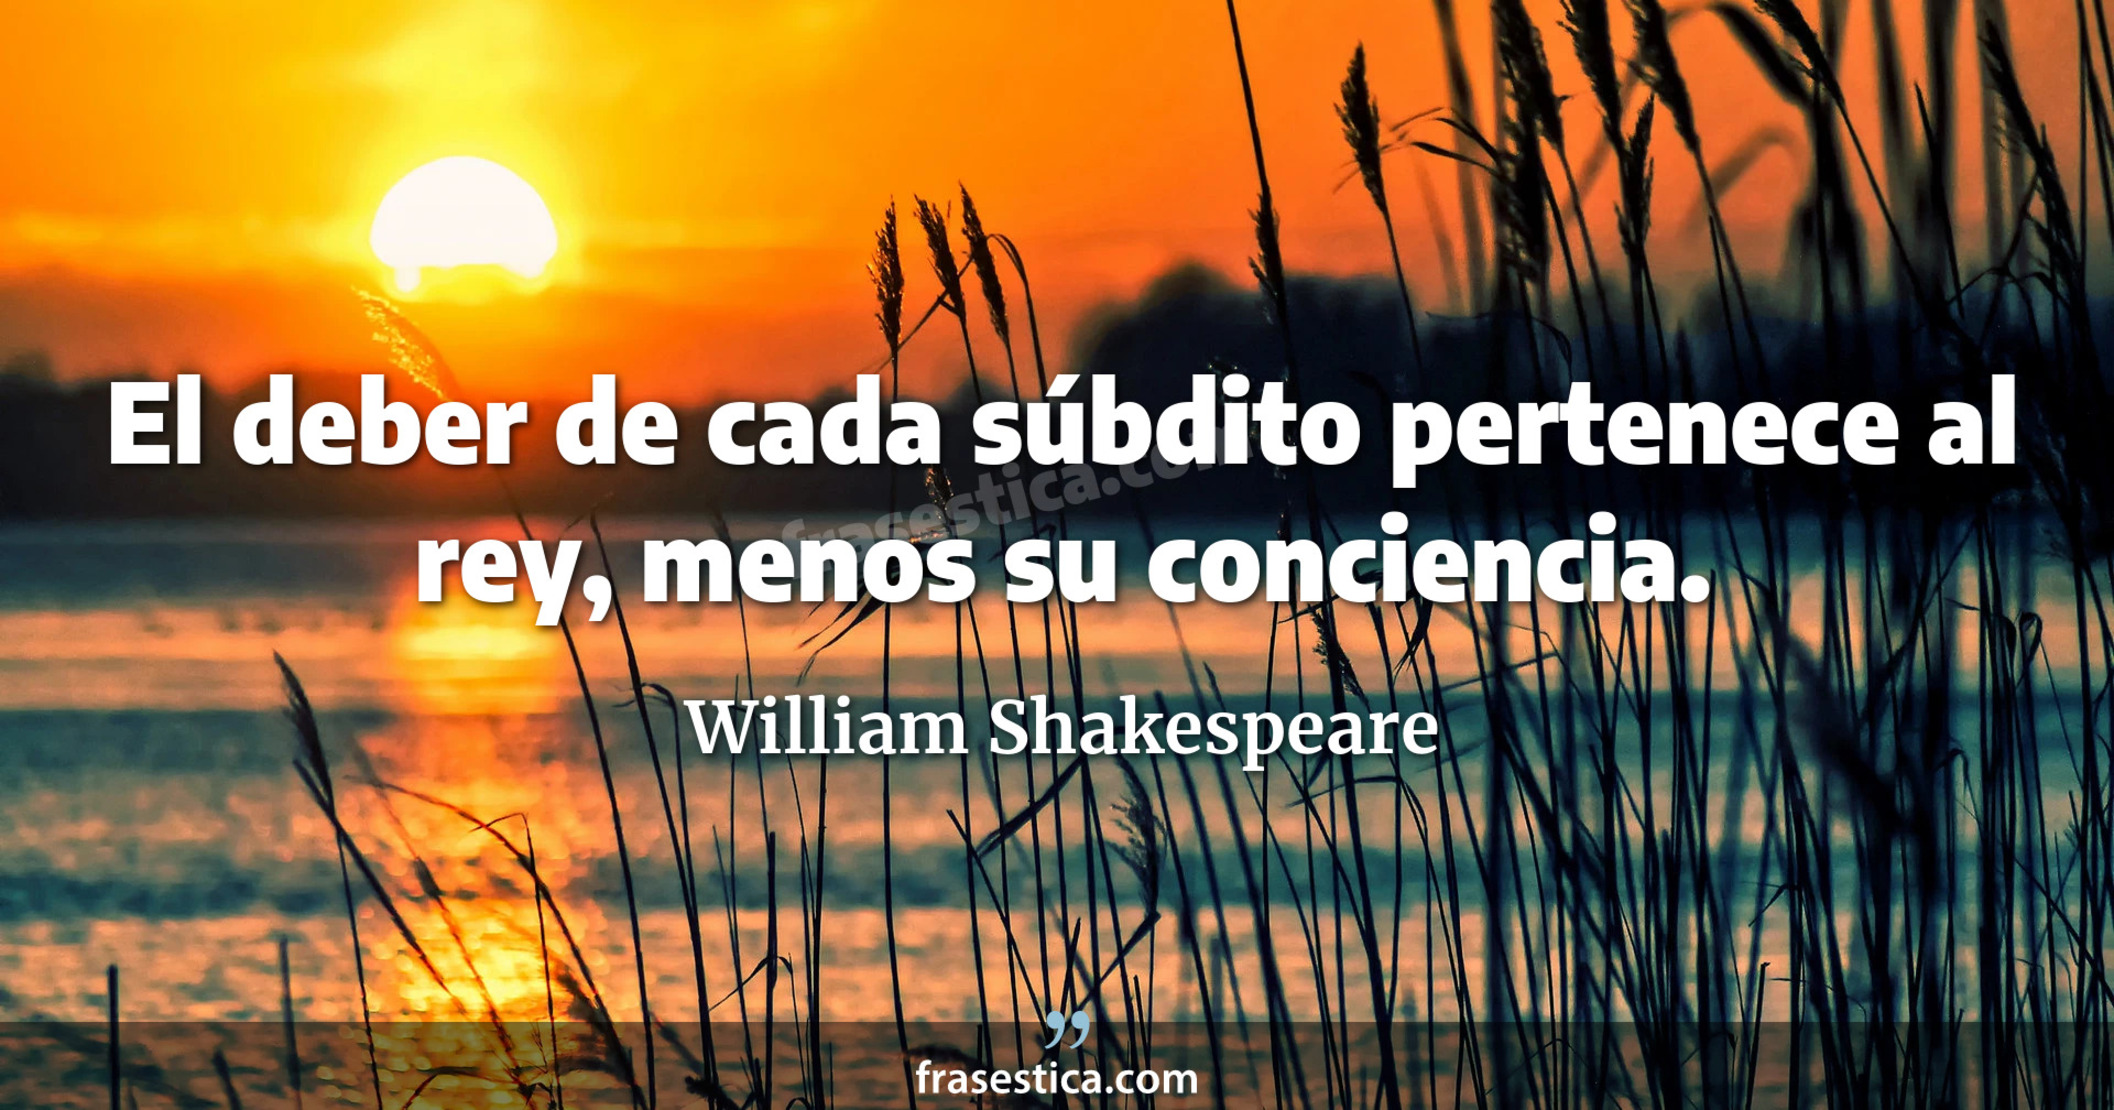 El deber de cada súbdito pertenece al rey, menos su conciencia. - William Shakespeare